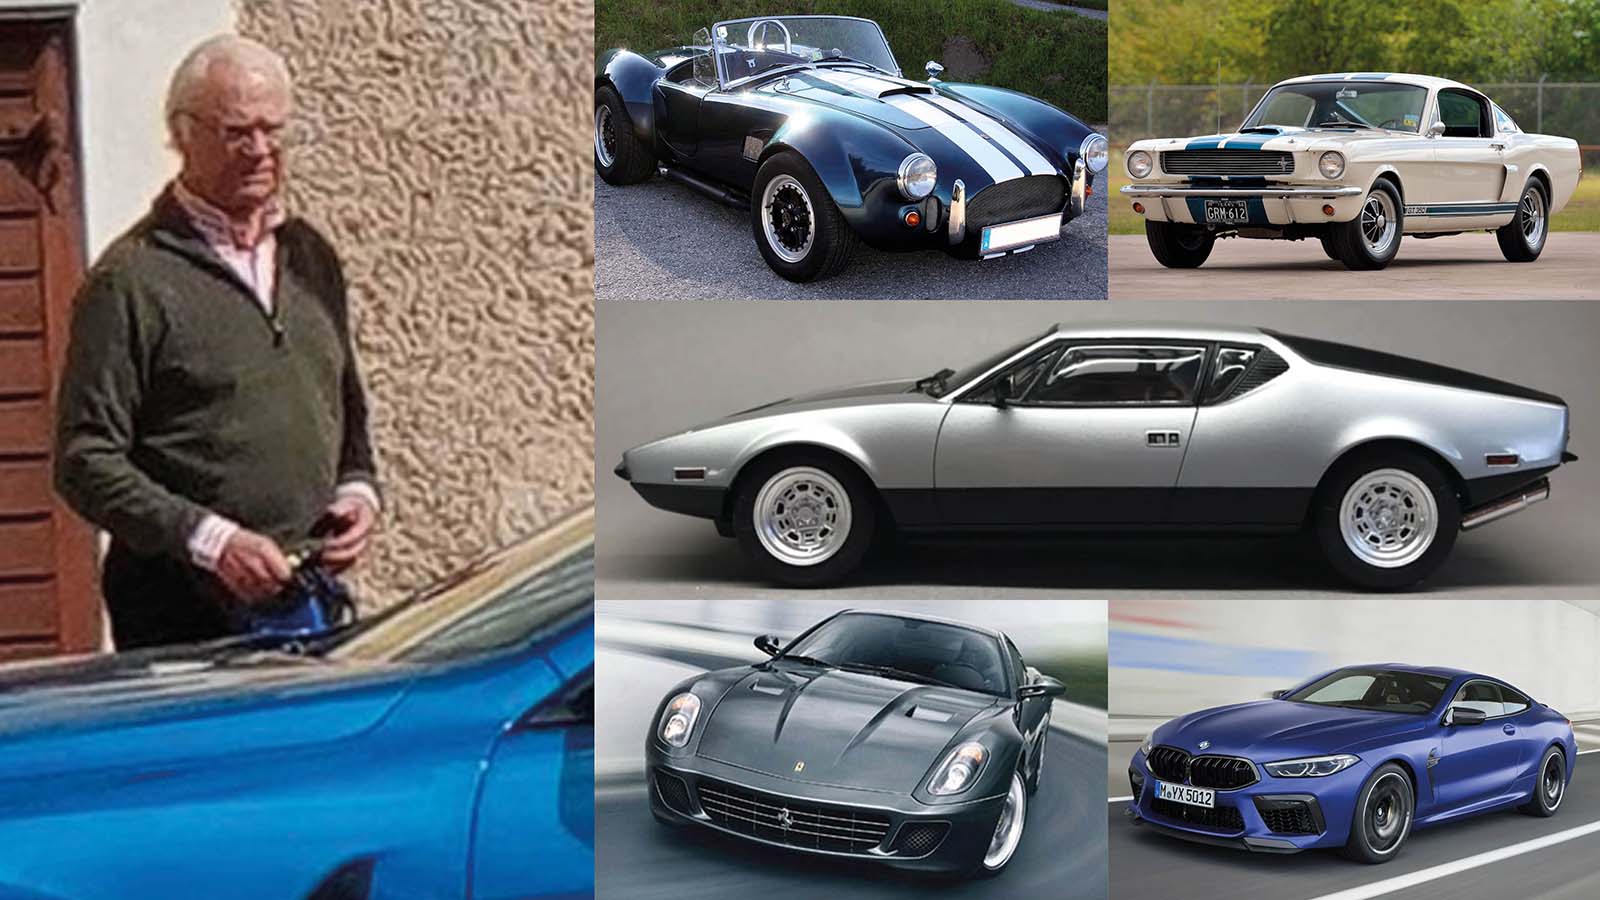 Il Re festeggia 50 anni sul trono: dai un’occhiata alla sua incredibile collezione di auto